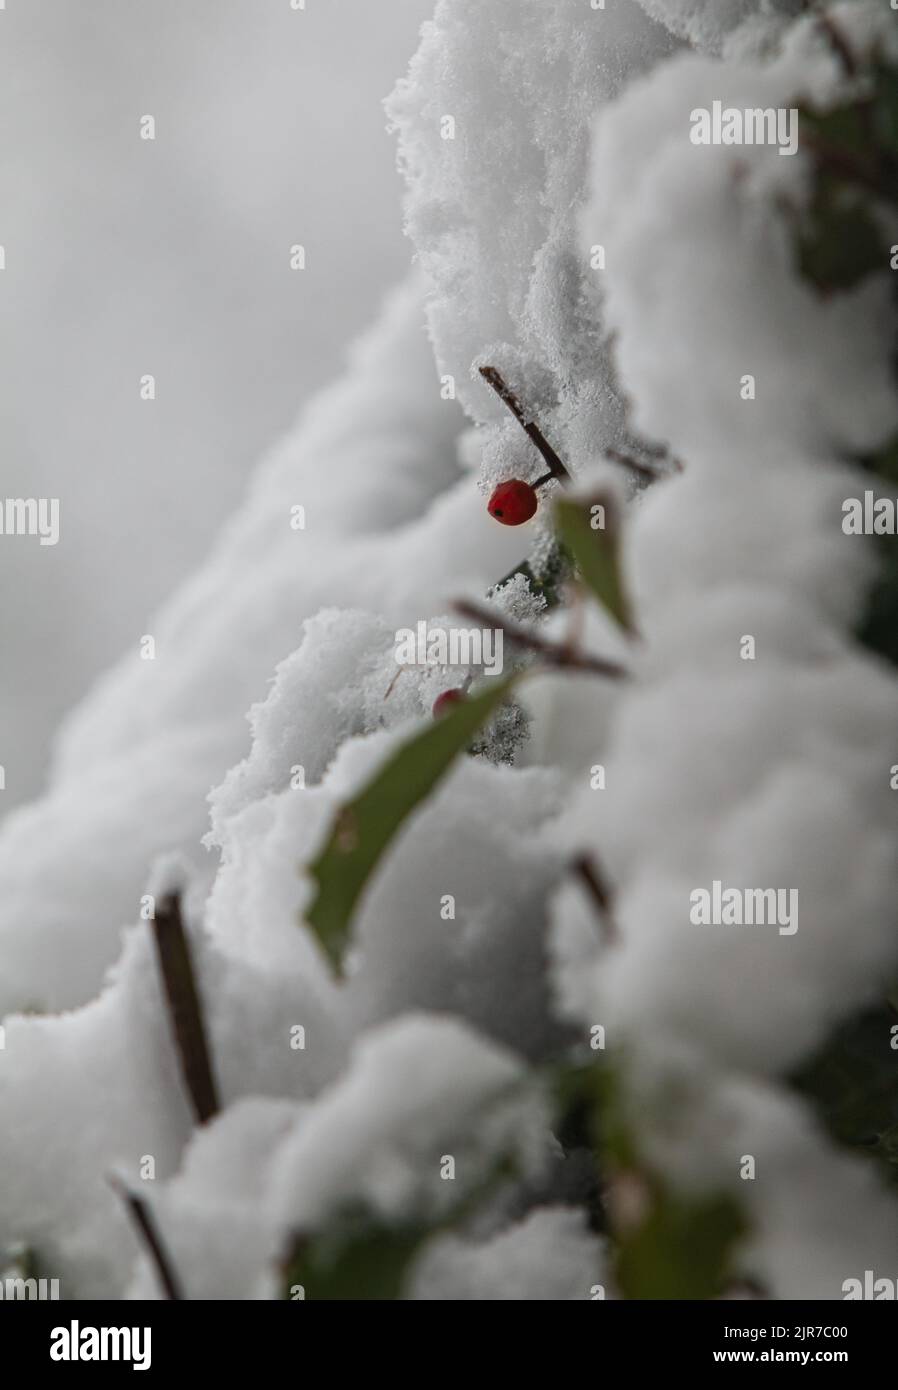 Una baya roja solitaria en un arbusto emerge del polvo fresco de una nevada reciente. Foto de stock